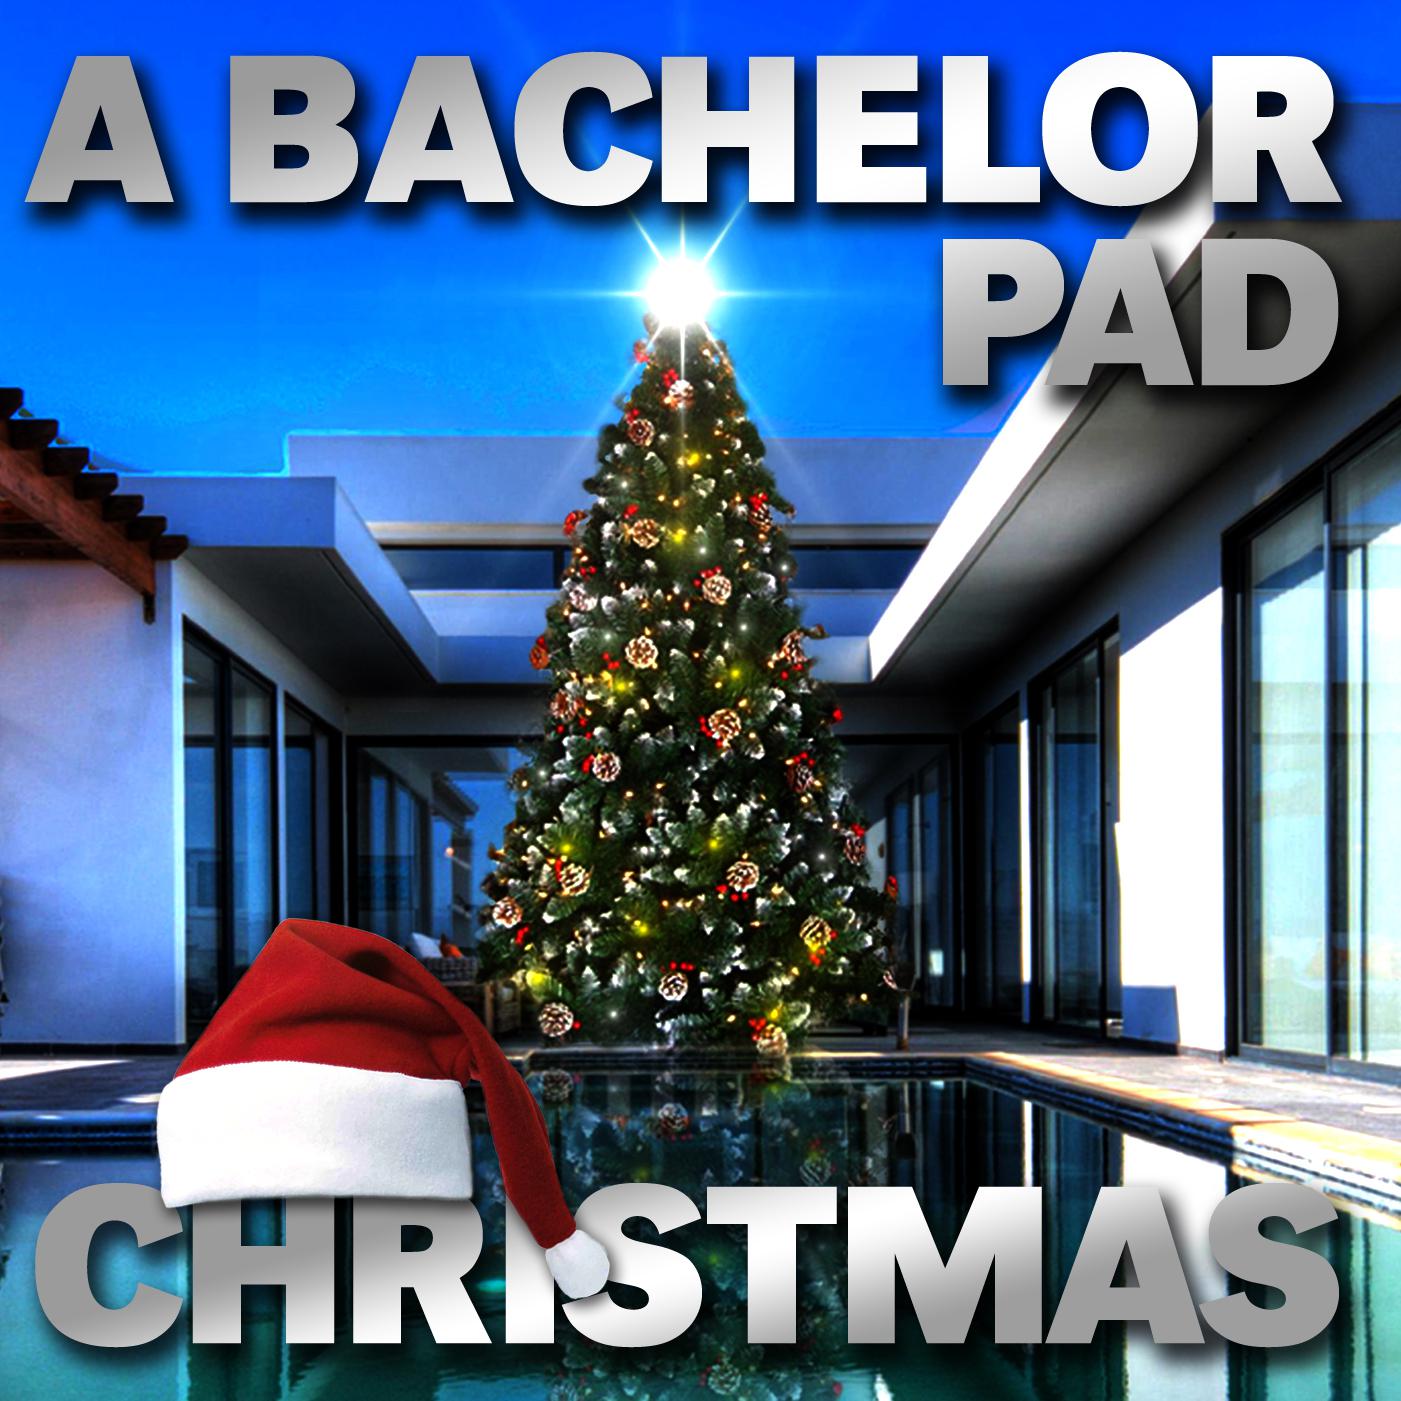 A Bachelor Pad Christmas